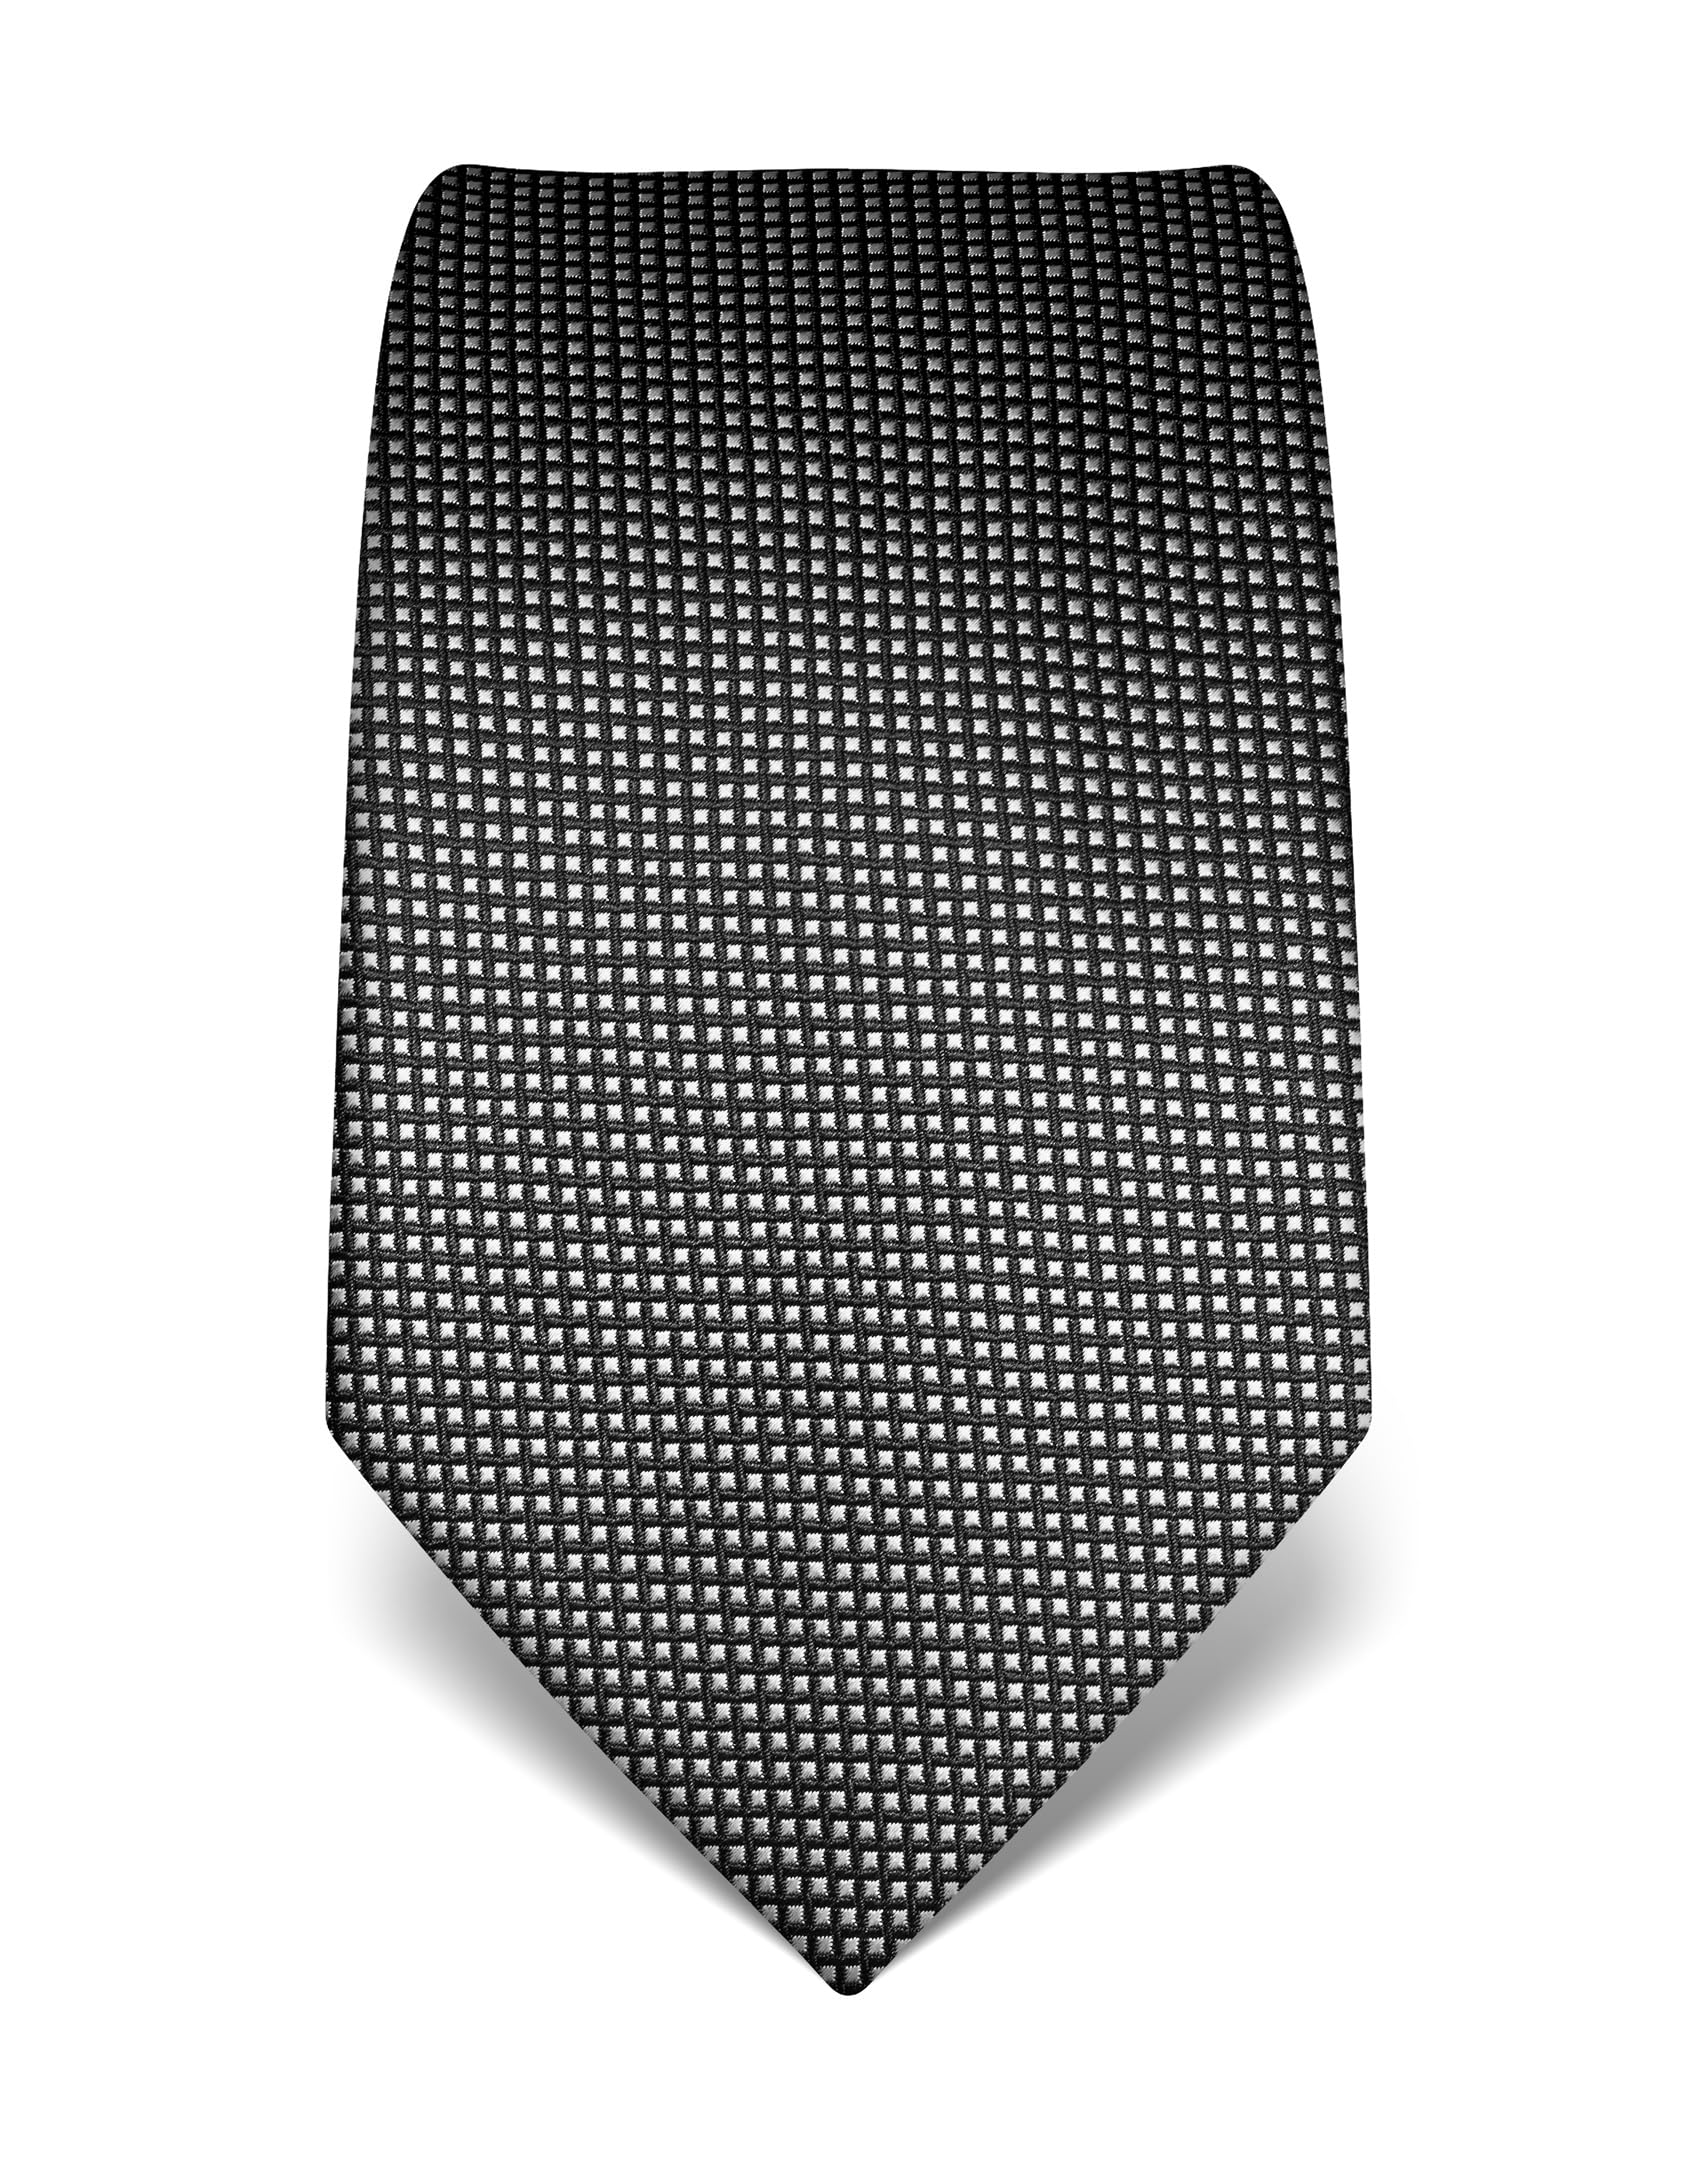 Vincenzo Boretti Herren Krawatte reine Seide gestreift edel Männer-Design zum Hemd mit Anzug für Business Hochzeit 8 cm schmal/breit anthrazit